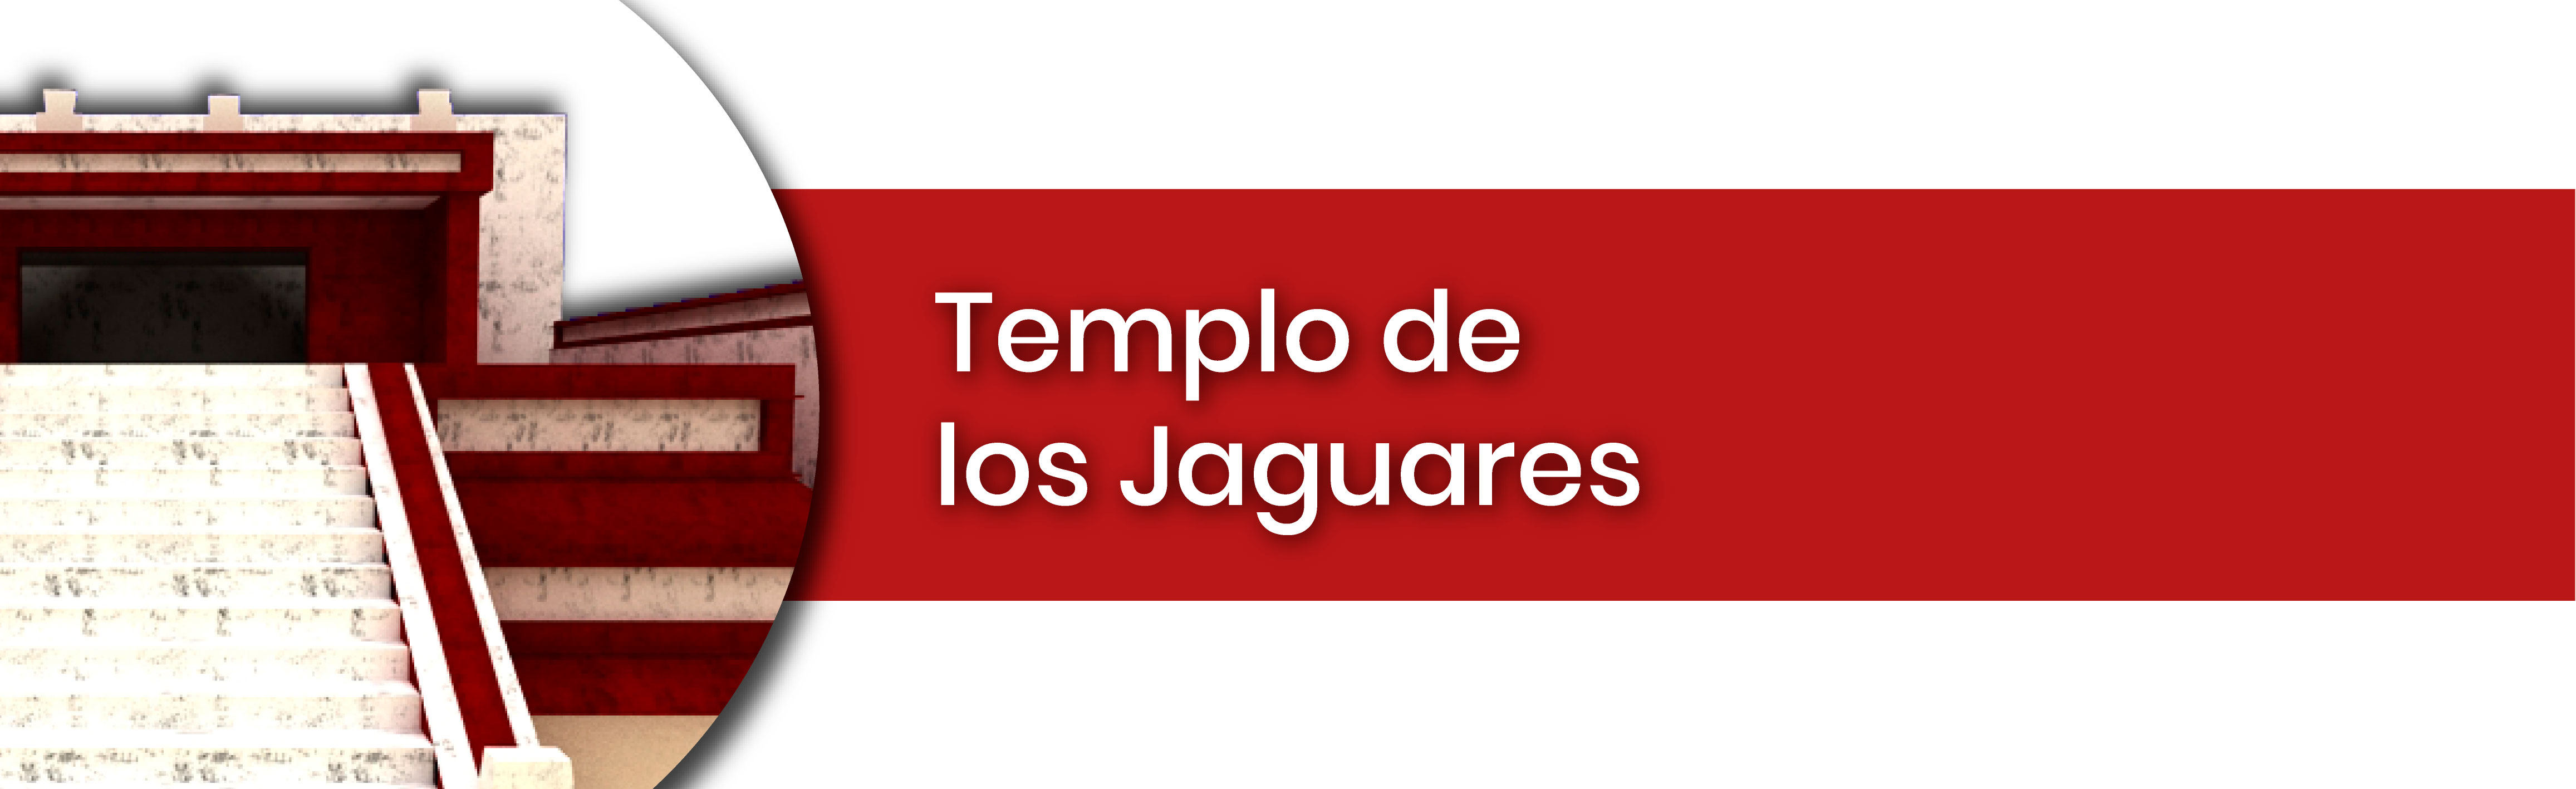 Templo de los Jaguares